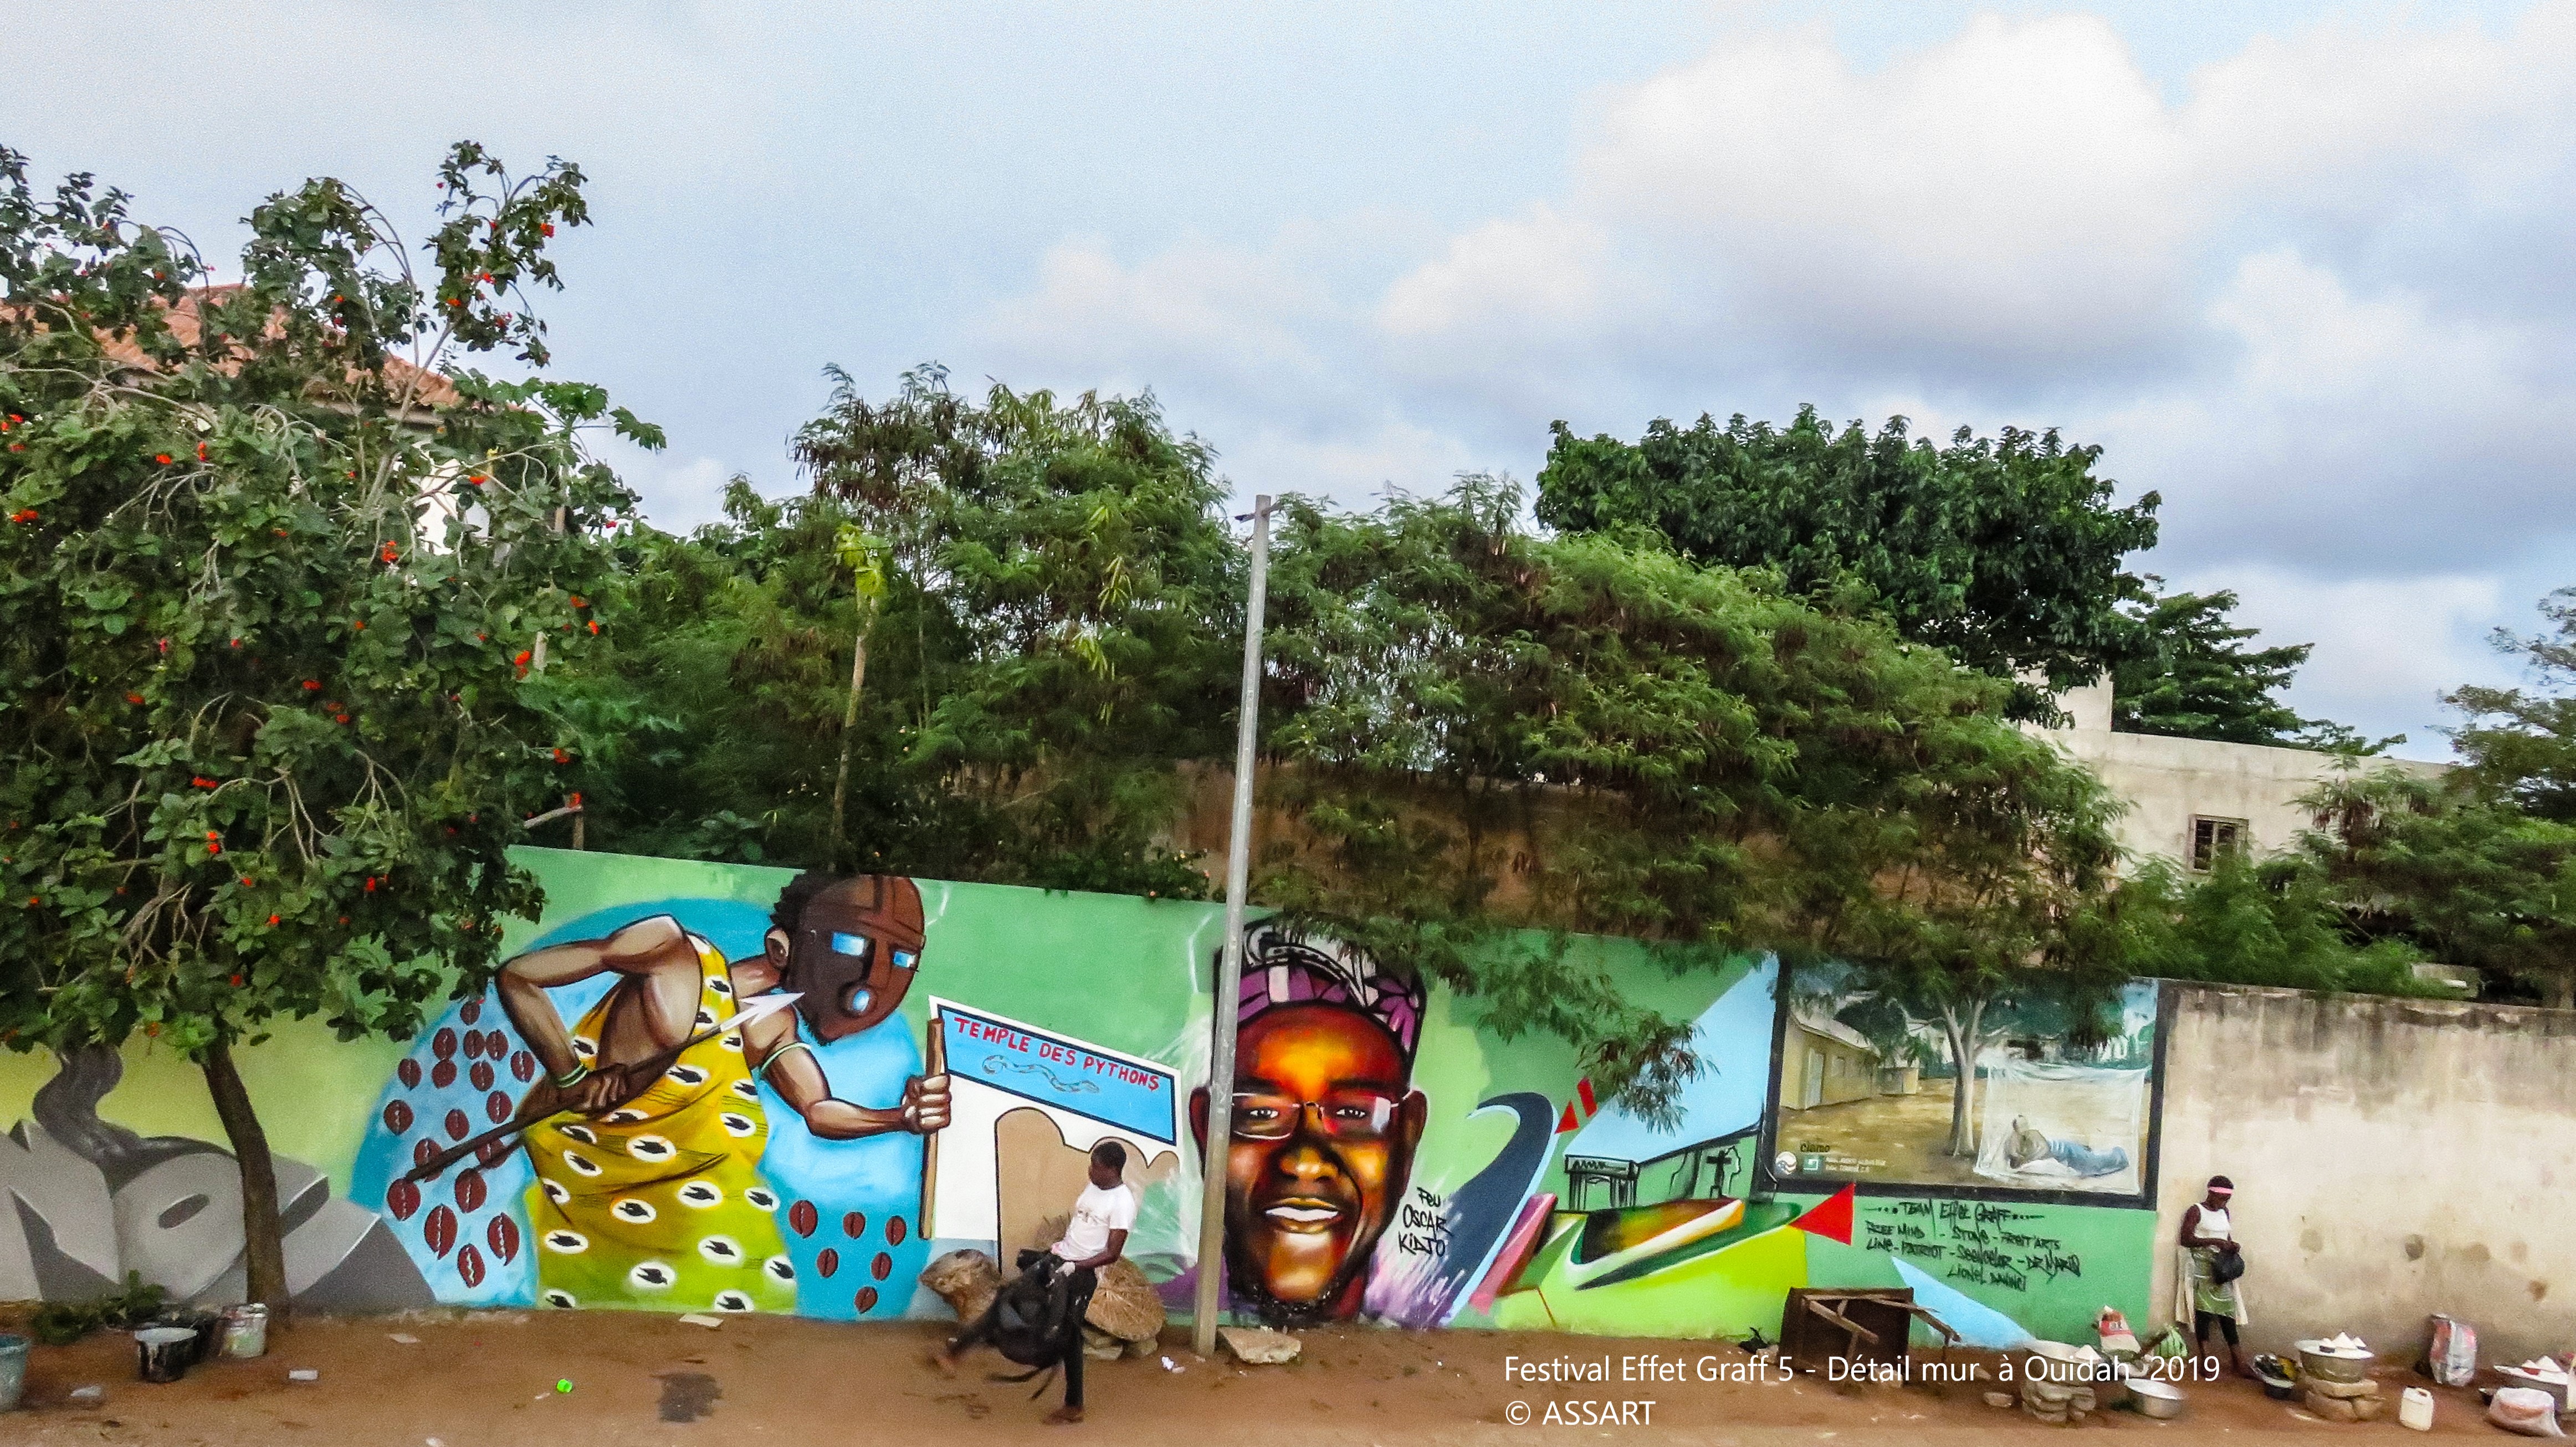 Festival Effet Graff 5 - Détail mur à Ouidah 2019 - ©ASSART